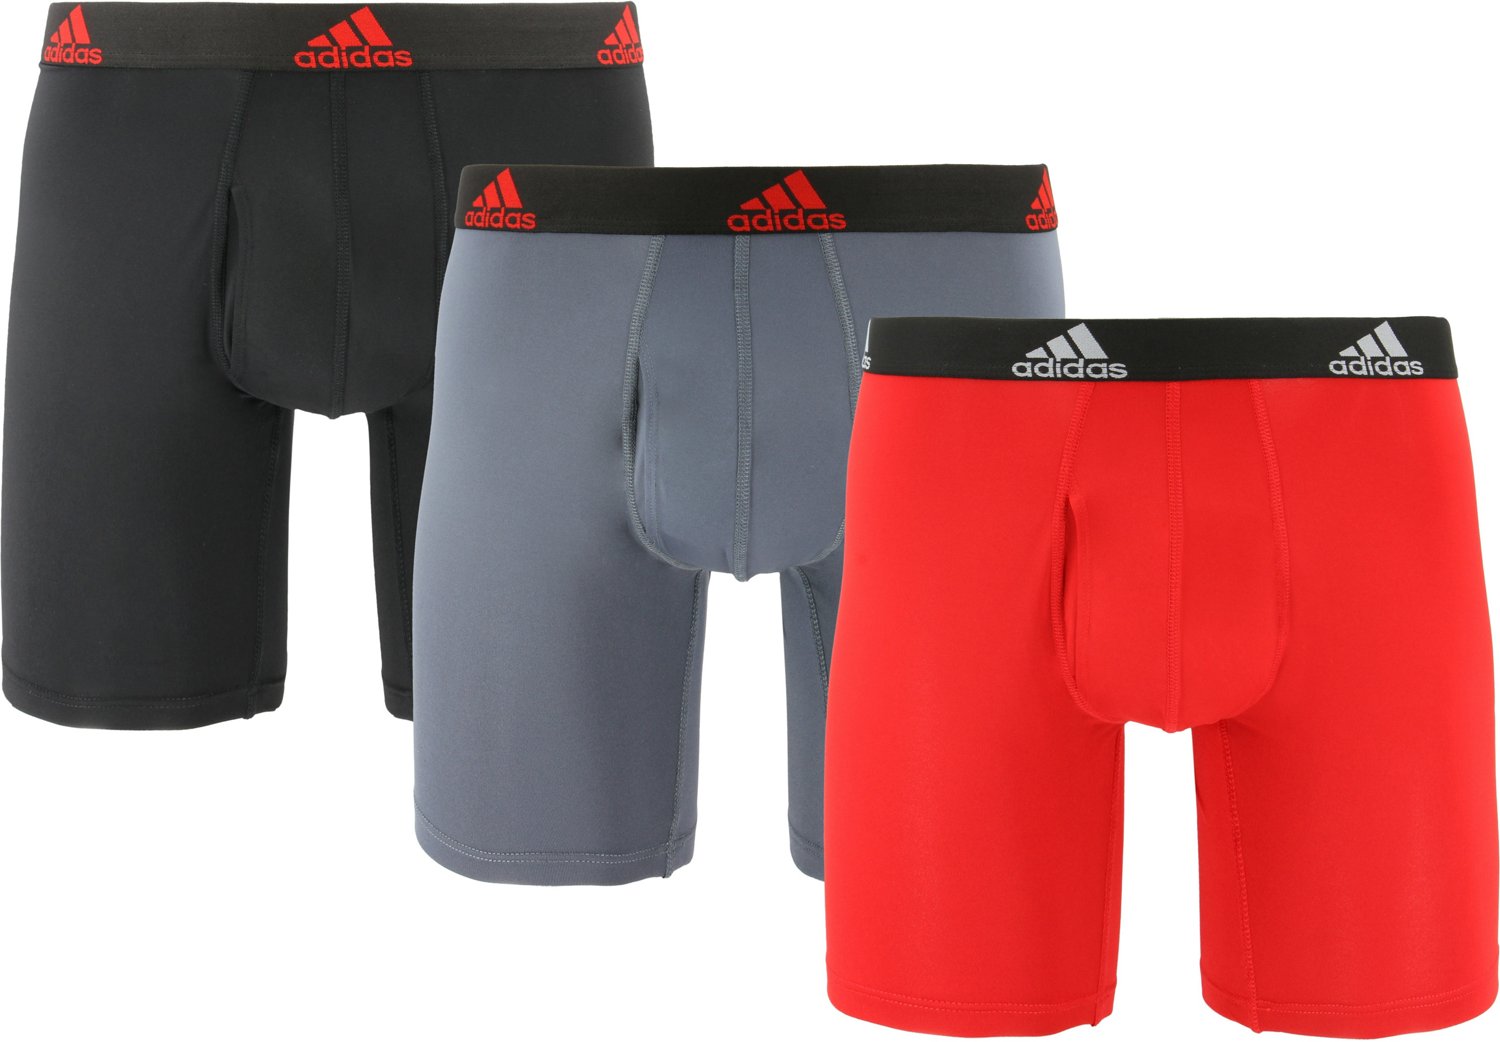 Adidas Mens Performance Stretch Cotton 3-Pack Boxer Brief Underwear XL  Red/BLK/G